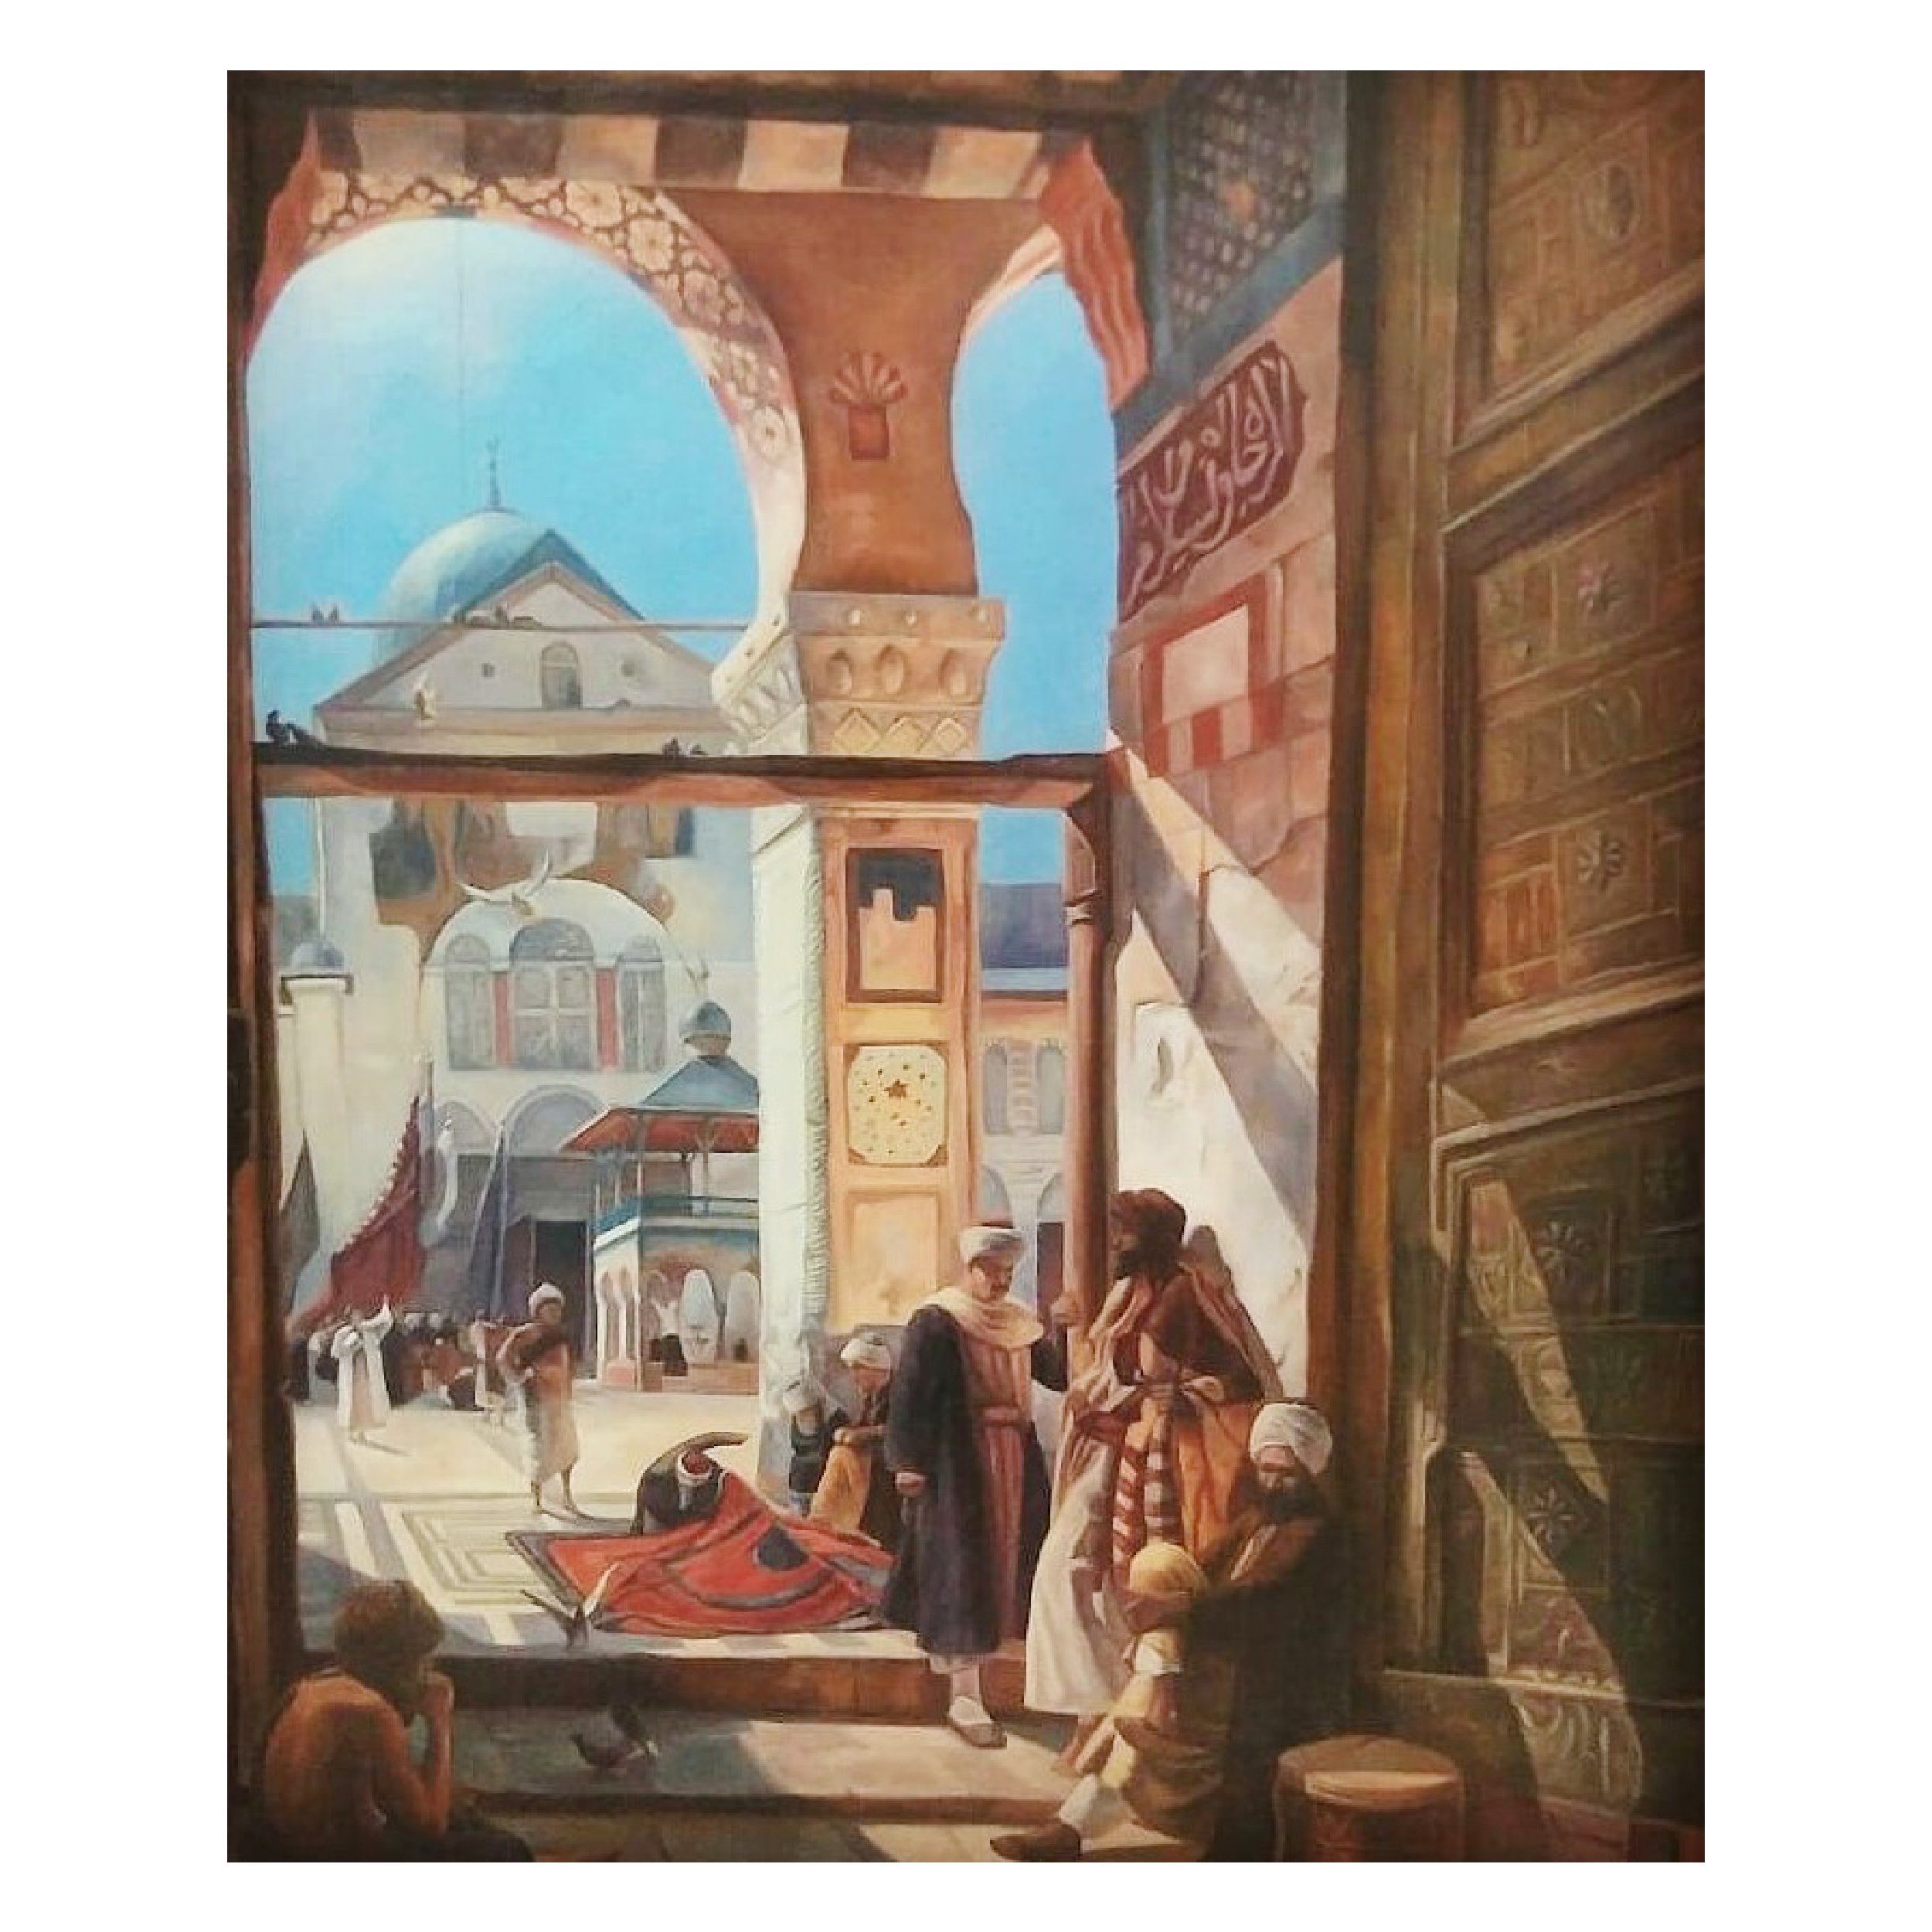 نکته خرید - قیمت روز تابلو نقاشی مدل مسجد وبازار کد m120 خرید